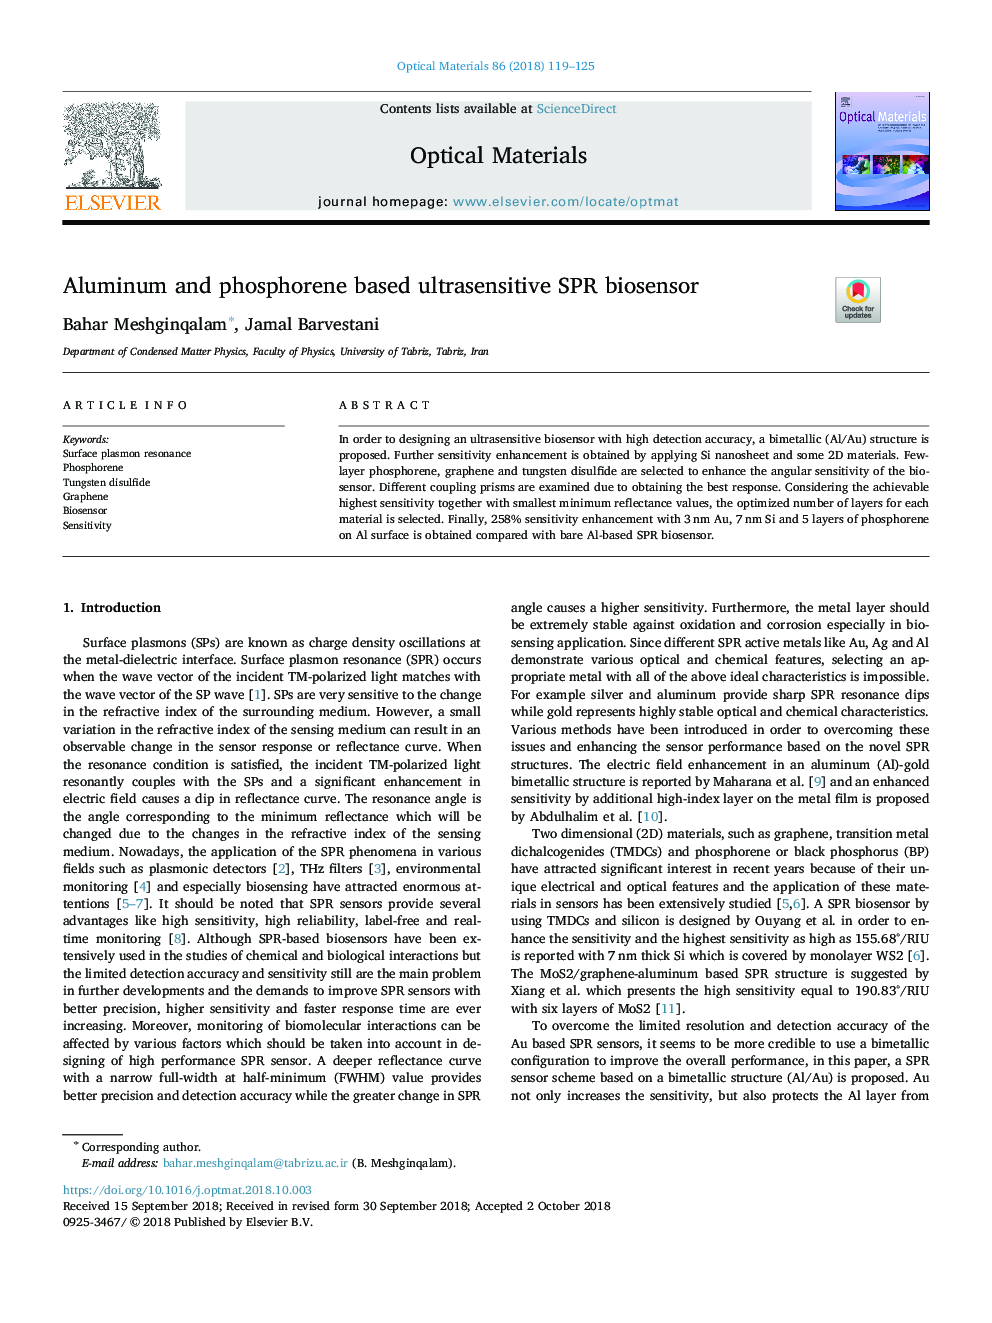 Aluminum and phosphorene based ultrasensitive SPR biosensor